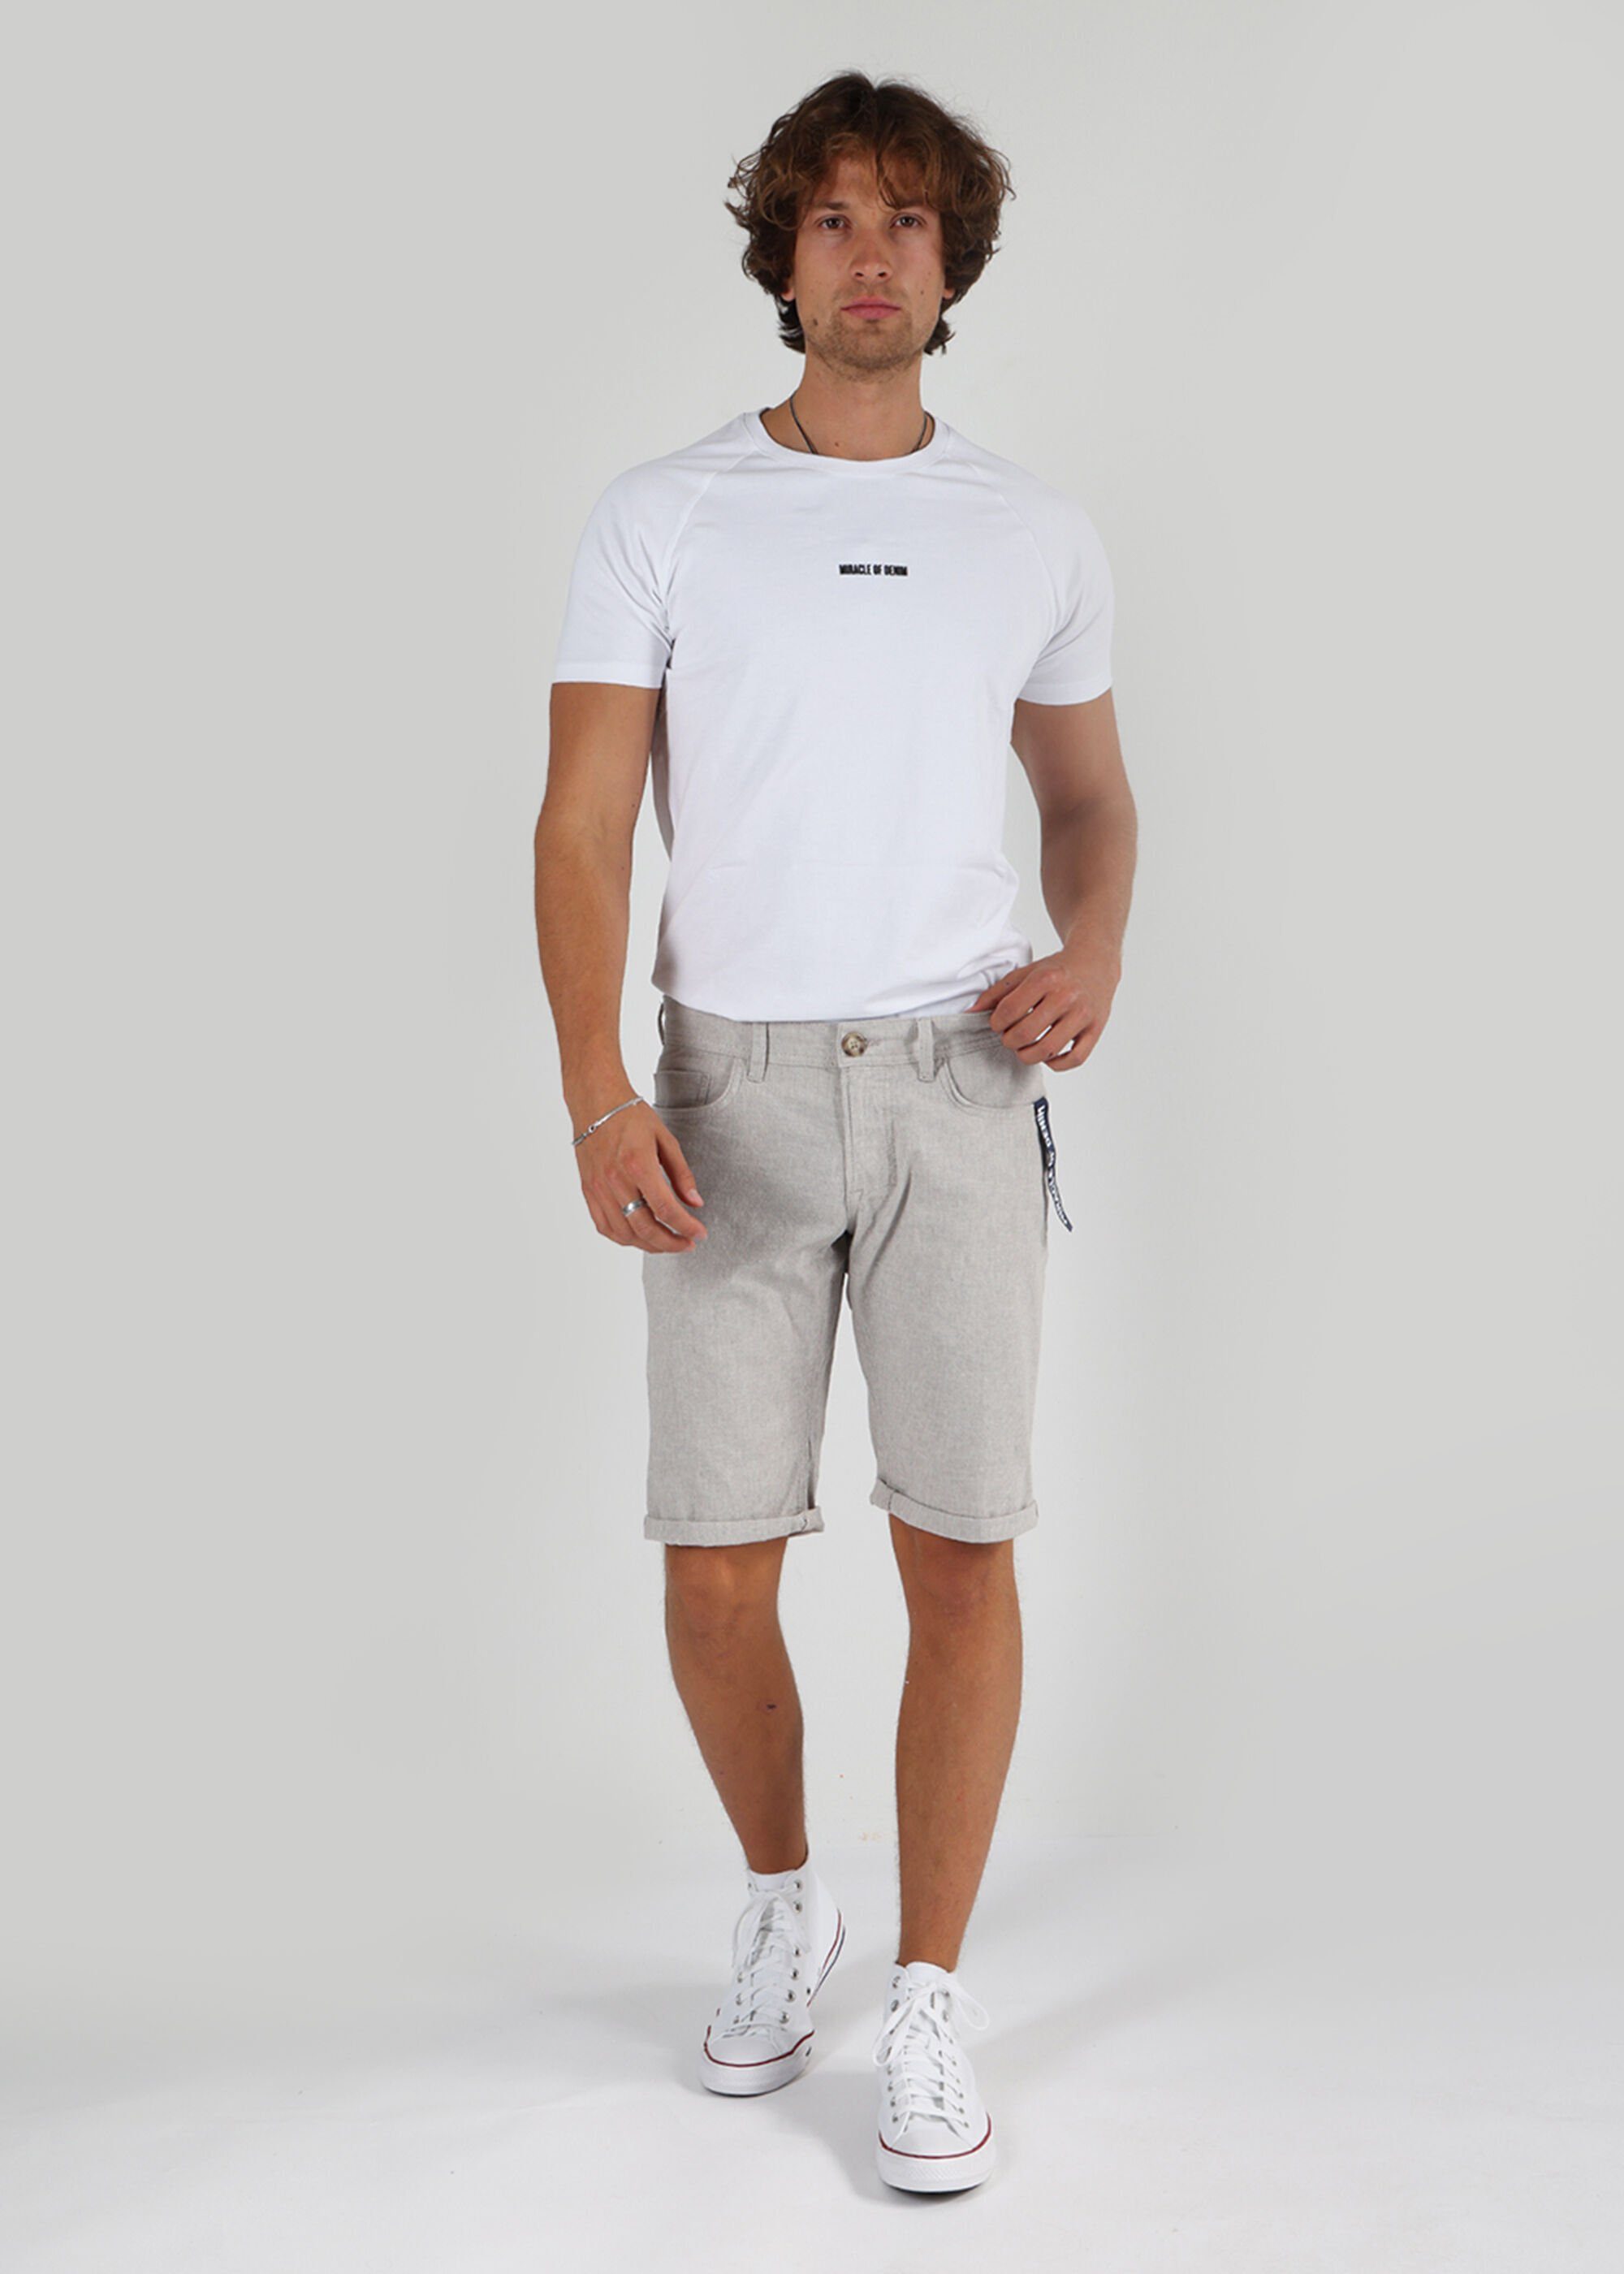 Pocket Thomas Miracle Style Grey Denim 5 Shorts Light of Stripe im Shorts